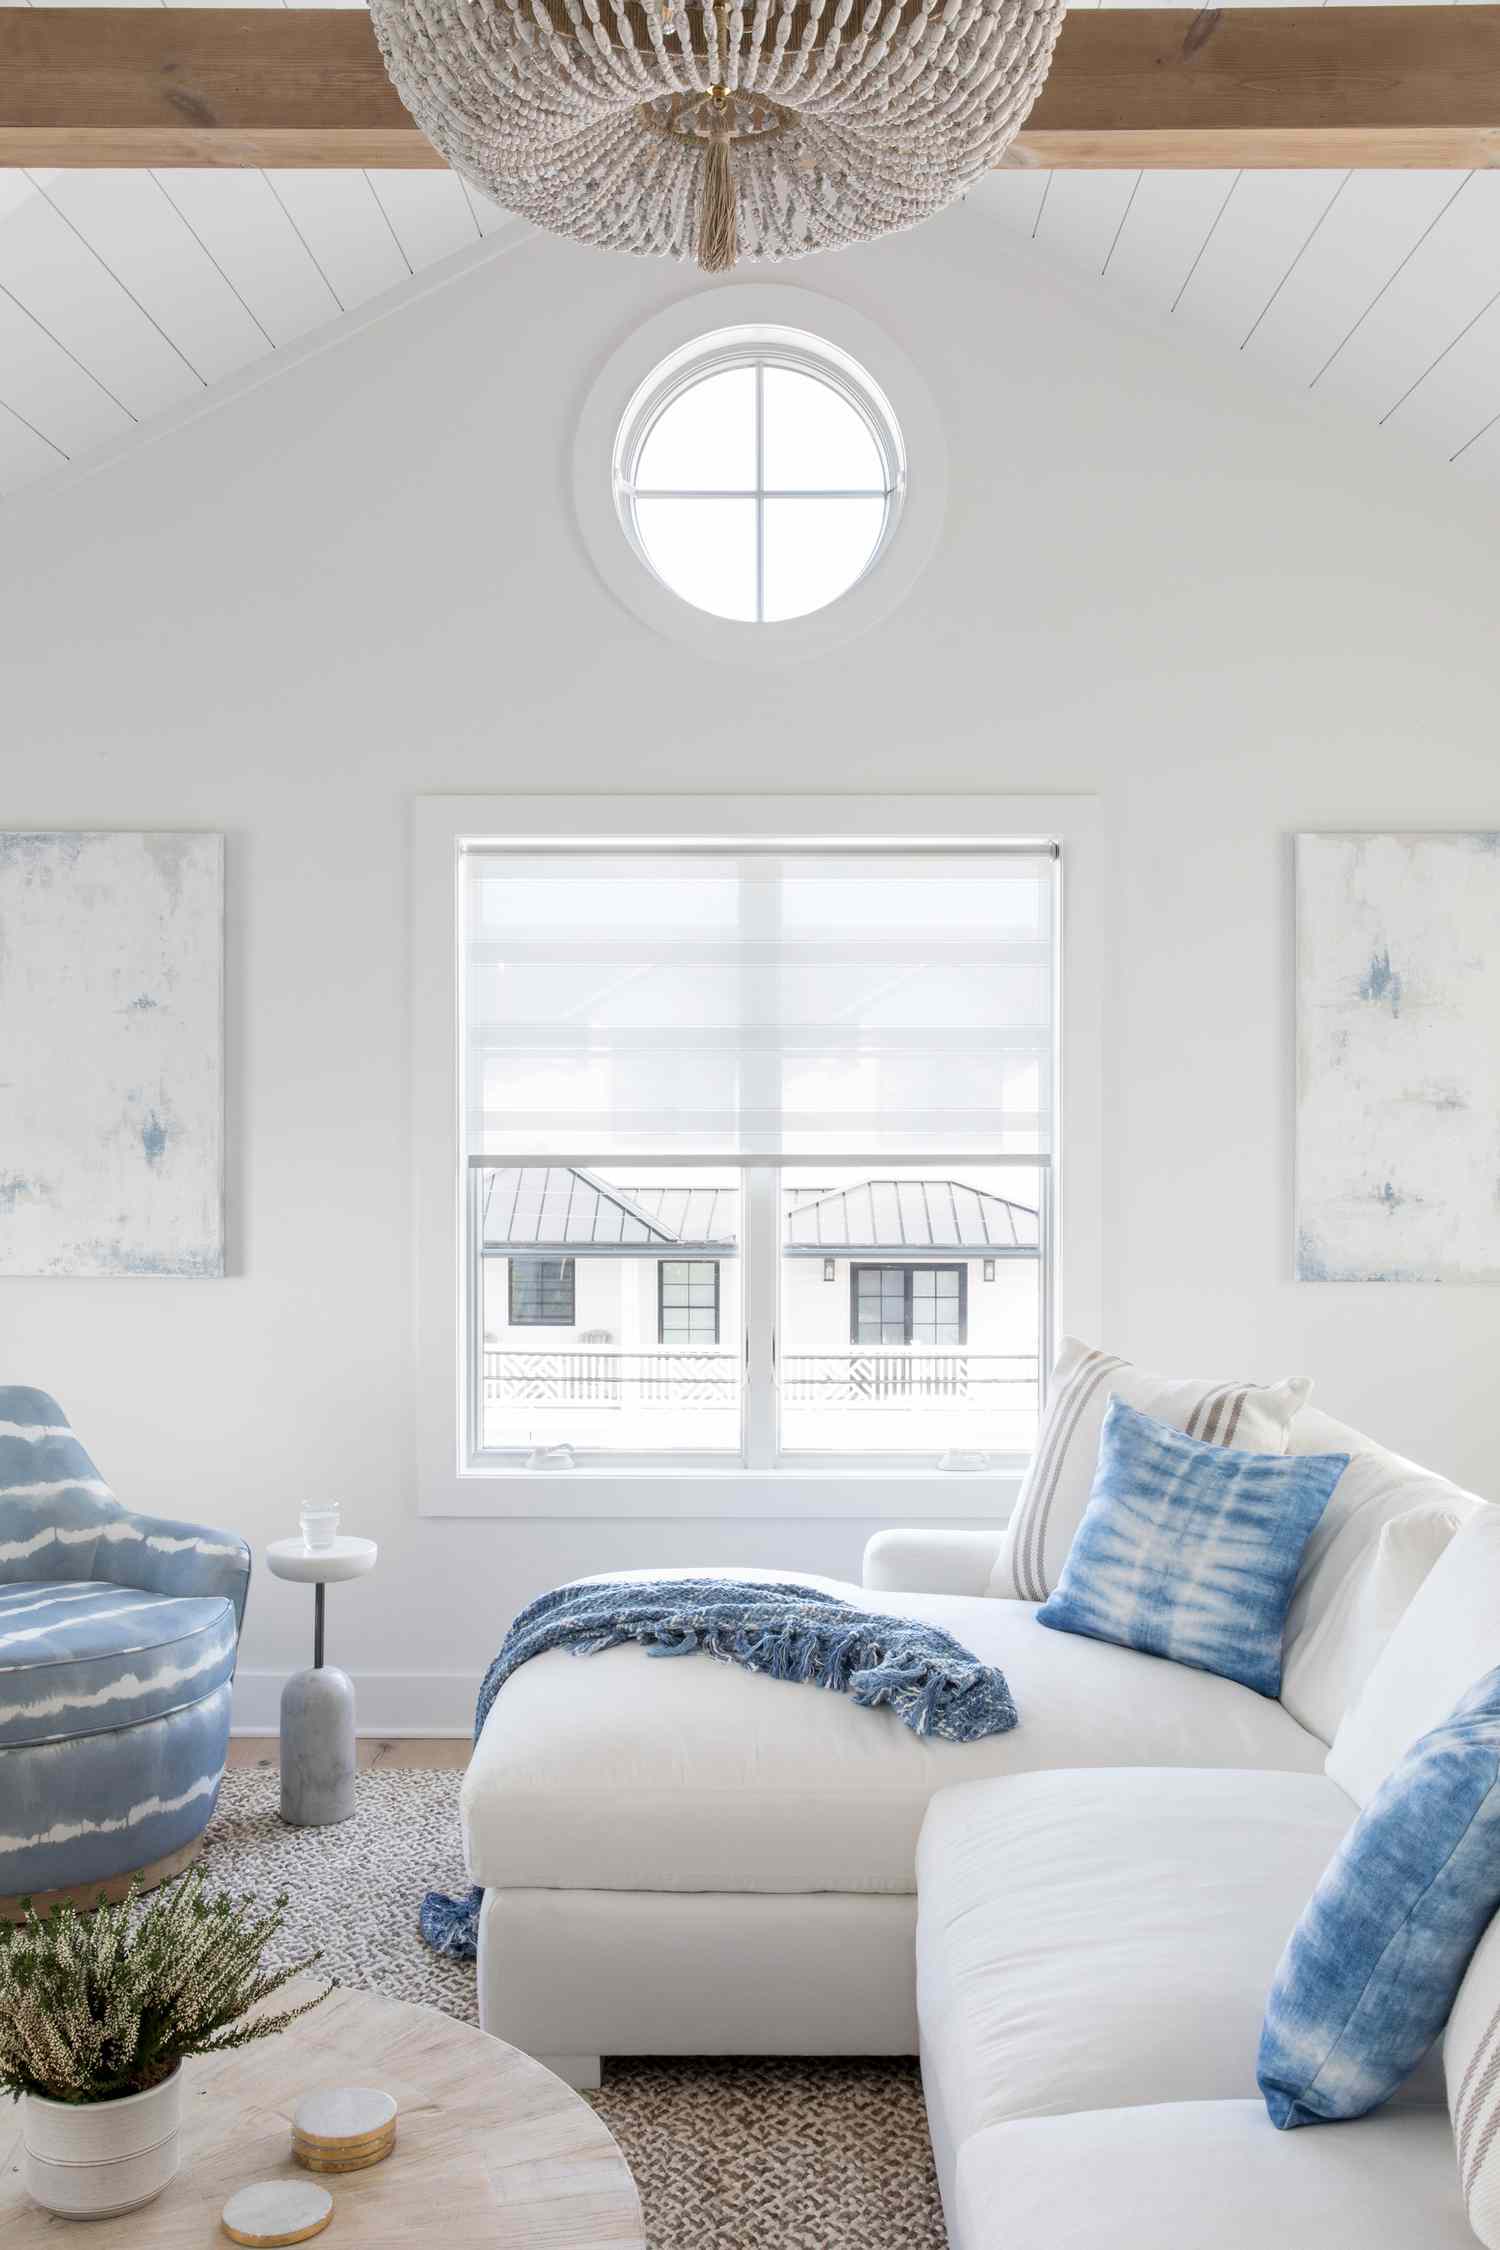 Karen B. Wolfes Wohnbereich auf Long Beach Island mit Portalfenstern und hohen Decken